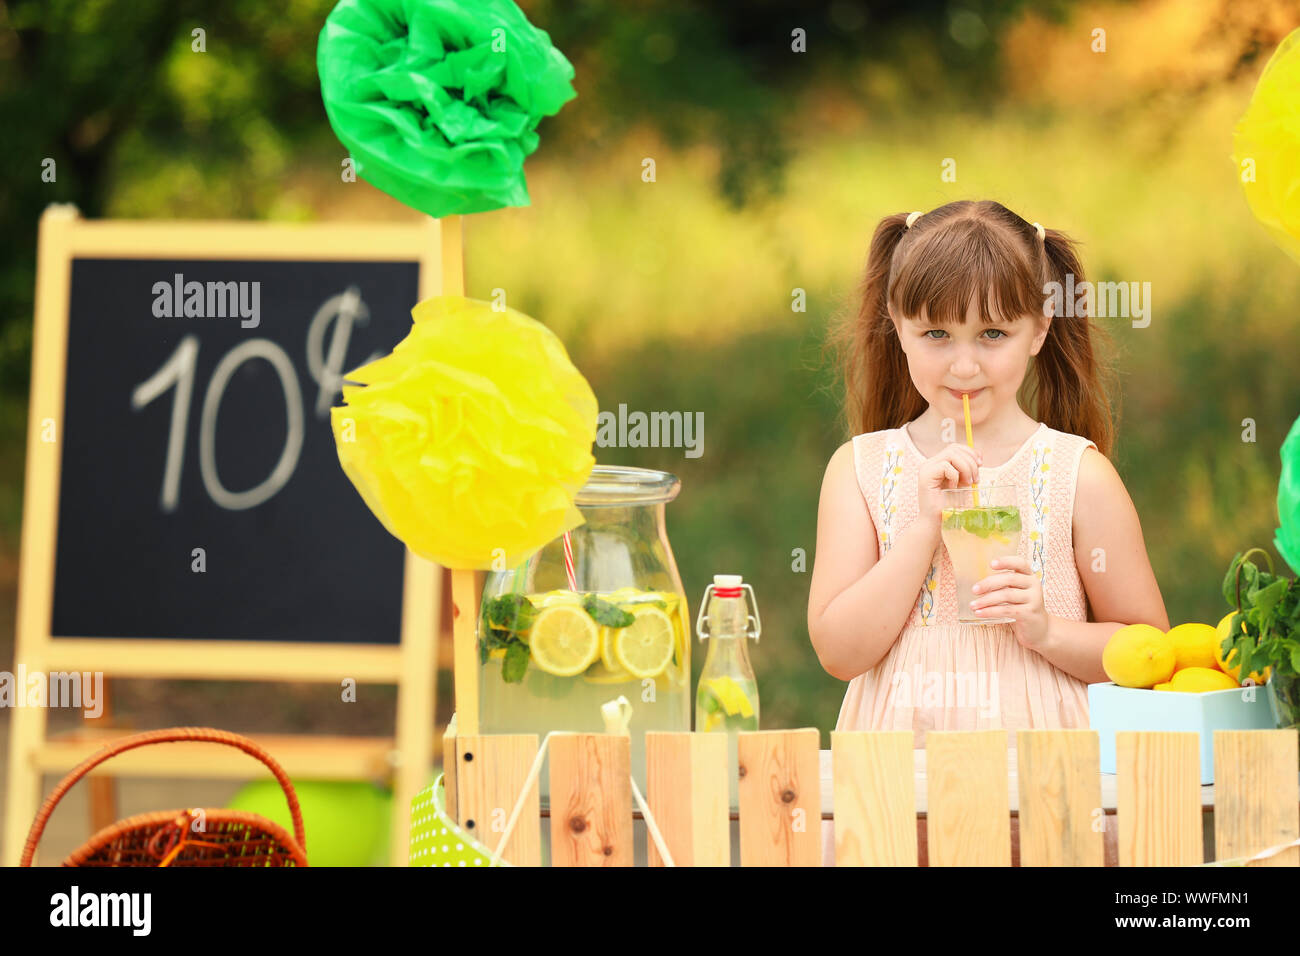 Cute little girl selling lemonade in park Stock Photo